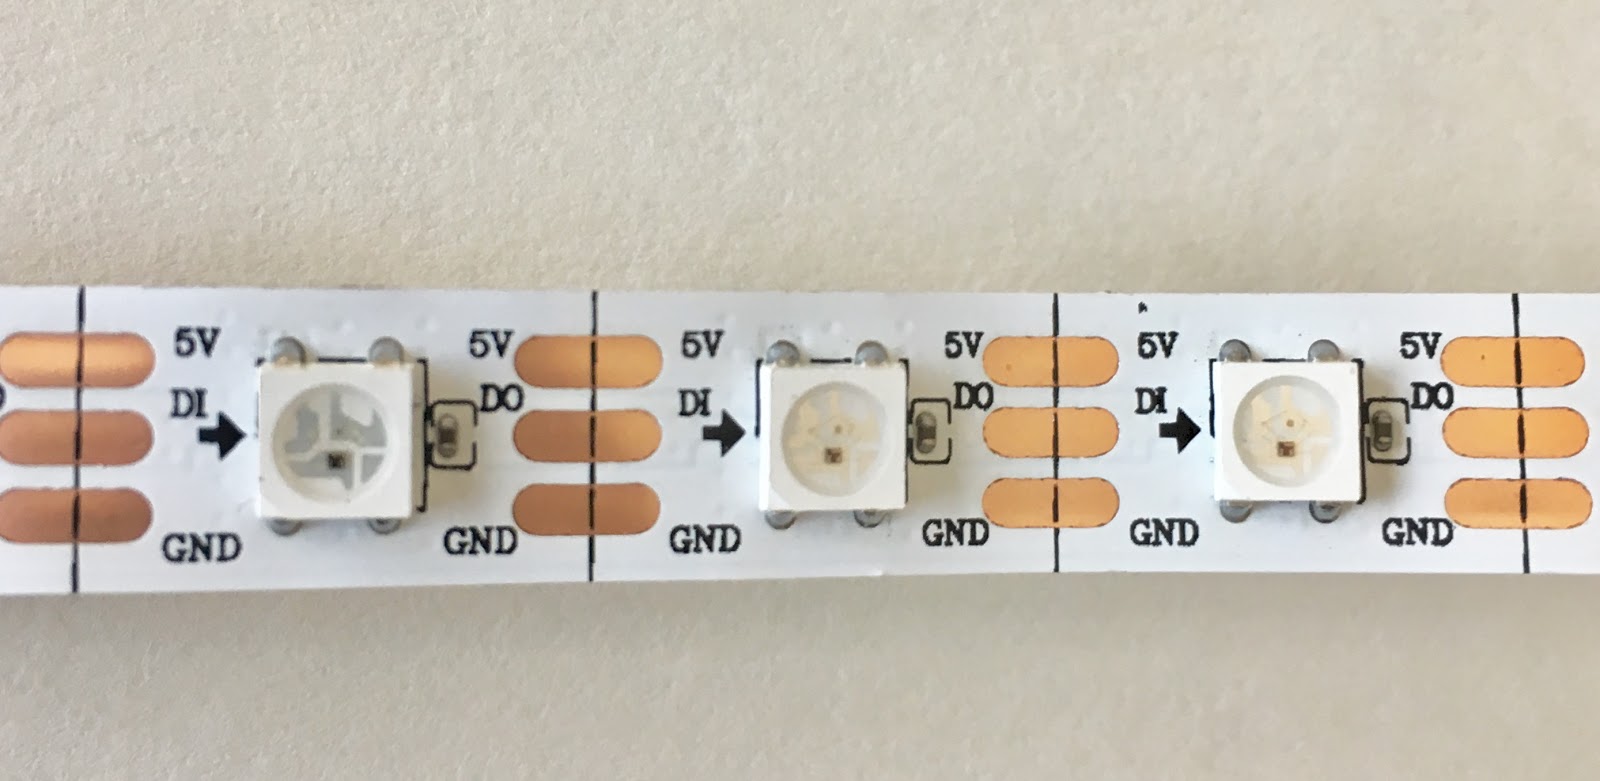 Addressable LED strips